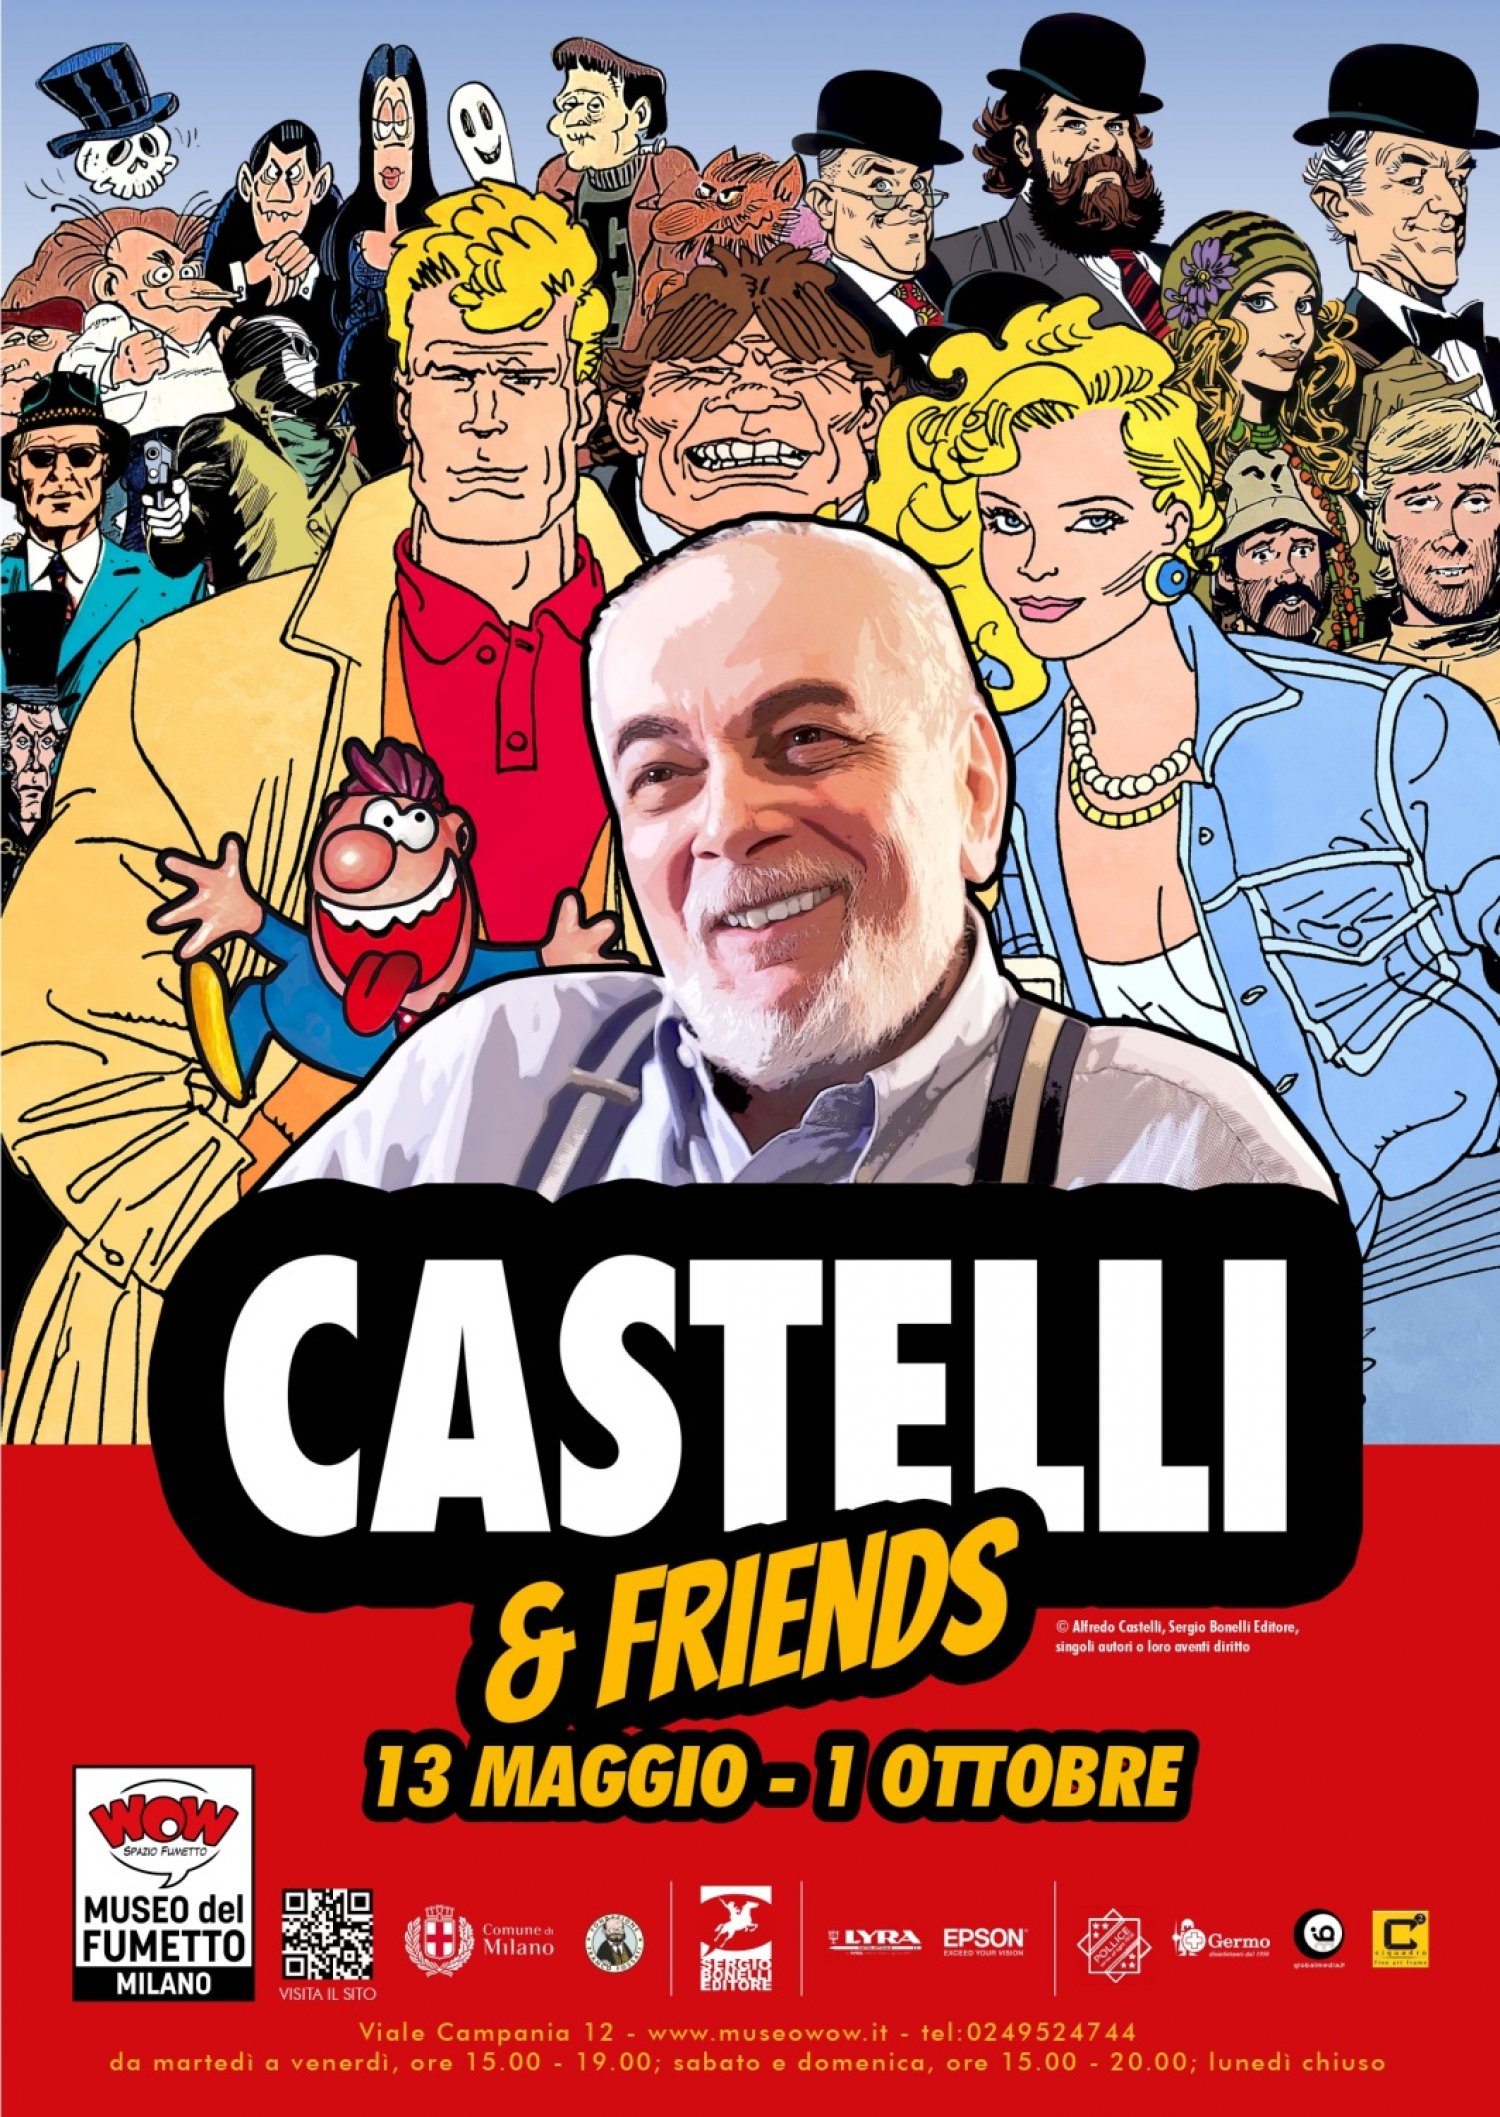 <p><strong>| Prorogata fino a domenica 1&deg; ottobre&nbsp;|</strong></p><p>&nbsp;</p><p>La mostra Castelli &amp; Friends, allestita a WOW Spazio Fumetto <strong>dal 13 maggio al 17 settembre 2023, racconta l&rsquo;evoluzione della vita professionale e la carriera di Alfredo Castelli, uno dei pi&ugrave; importanti sceneggiatori di fumetto a cui dobbiamo capolavori come Martin Myst&egrave;re e Gli Aristocratici</strong>, e quella dei vari &ldquo;Friends&rdquo; che l&rsquo;hanno accompagnato nel mondo del fumetto con occasionali incursioni in quello del cinema e della pubblicit&agrave;.</p><p>In mostra disegni originali, pubblicazioni, oggetti e filmati, che dagli anni Sessanta arriva ai giorni nostri, oltre a reperti dimenticati e, soprattutto, &ldquo;insoliti e curiosi&rdquo;: il tipo di cose, insomma, che piacciono a Martin Myst&egrave;re, personaggio principe della produzione castelliana da pi&ugrave; di quarant&rsquo;anni. Tra gli inediti progetti non accettati e altri rimasti nel cassetto, disegni e schizzi estemporanei di amici e collaboratori.</p><p>La mostra &egrave; curata da Alex Dante e Luca Bertuzzi e organizzata in collaborazione con Sergio Bonelli Editore.</p><p><strong>Inaugurazione sabato 13 maggio alle ore 17:00 con Alfredo Castelli.</strong></p><p>&nbsp;</p><p>Alfredo Castelli, nato a Milano nel 1947, ha vissuto l&rsquo;infanzia negli anni della ricostruzione dopo la guerra, in tempi molto diversi da oggi, pi&ugrave; poveri ma anche caratterizzati da un forte ottimismo e dalla volont&agrave; di utilizzare al massimo la fantasia. I film si potevano vedere solo al cinema, ma c&rsquo;erano moltissimi fumetti, che per&ograve; Castelli leggeva poco, perch&eacute; i genitori li ritenevano diseducativi. Gli era permesso solo il <em>Corriere dei Piccoli</em>, ma almeno poteva divorare tantissimi libri.</p><p>Rimasto affascinato dall&rsquo;arte dell&rsquo;animazione, decise che sarebbe diventato un Disney italiano, ma cap&igrave; presto che la cosa non faceva per lui. In compenso, il libro &ldquo;I fumetti&rdquo; di Carlo Della Corte lo stimol&ograve; a intraprendere la carriera di <em>cartoonist</em>.&nbsp;Present&ograve; le sue prime prove, come autore di testi e disegni, a varie case editrici. Prima tent&ograve; con il disegno realistico, poi con quello umoristico. Dopo alcuni tentativi non andati a buon fine, come la parodia di Superman intitolata Superdan (proposta alla Casa Editrice Universo), Angela e Luciana Giussani acquistarono alcune puntate di una serie interpretata da un gruppo di mostri intitolata Cattiverius Junior, che per&ograve; non pubblicarono. Le geniali sorelle, autrici ed editrici di Diabolik, vollero per protagonista di questo fumetto d&rsquo;esordio di Castelli uno dei comprimari di Cattiverius, uno scheletro vivente che, ribattezzato Scheletrino, cominci&ograve; a uscire in appendice a Diabolik nel gennaio 1965. Fu rivedendo le sue semplici storie che Castelli decise, per il bene dei lettori, che sarebbe stato meglio lasciar perdere il disegno e dedicarsi alle sceneggiature.</p><p>Nel 1967 fonda, insieme all&rsquo;amico Paolo Sala, la prima <em>fanzine</em> italiana, <em>Comics Club 104</em>, e lavora come soggettista anche per Cucciolo, Kolosso, Pedrito El Drito e altri personaggi umoristici.&nbsp;L&rsquo;anno successivo, insieme a Mario Gomboli e Marco Baratelli, con i disegni di Carlo Peroni, d&agrave; vita a <em>TILT</em>, una rivista, durata solo due numeri, che prende spunto dalla fortunatissima pubblicazione statunitense <em>MAD</em>, celebre per le geniali parodie di fumetti, film e programmi televisivi.&nbsp;In mostra si trovano tutti i rari numeri di <em>Comics Club 104</em> e due copertine originali, tra cui una dedicata a Topolino disegnata da Luciano Bottaro, e due tavole da <em>TILT</em>, tra cui una di Diabetik, spassosa parodia di Diabolik.</p><p>Castelli collabora poi con la rivista <em>Psyco</em> - dove, in coppia con Marco Baratelli, scrive &ldquo;Van Helsing&rdquo;, fumetto con lo storico antagonista di Dracula disegnato ancora da Carlo Peroni - e d&agrave; vita (con Pier Carpi) a <em>Horror</em>, rivista interamente dedicata all&rsquo;orrore e al soprannaturale, pubblicata dal vulcanico editore Gino Sansoni, dove esordiscono o trovano finalmente uno spazio alcuni dei pi&ugrave; importanti autori italiani. Qui esce finalmente anche Zio Boris, una striscia comica di ambientazione horror. In mostra: tavole e numeri di queste pubblicazioni.</p><p>Dopo <em>Horror</em>, Zio Boris ricompare nel 1972 sul <em>Corriere dei Ragazzi</em>, il &ldquo;settimanale irripetibile&rdquo; che ha tracciato una delle pi&ugrave; ricche e interessanti proposte di rivista e di &ldquo;giornalismo a fumetti&rdquo; per ragazzi. Castelli &egrave; nella redazione di questa pubblicazione ed &egrave; uno dei principali sceneggiatori, insieme al giornalista e autore Mino Milani. Su quelle pagine Castelli trasforma TILT in una rubrica demenziale, con la collaborazione di Bonvi e di Daniele Fagarazzi, creando anche l&rsquo;indimenticabile Omino Bufo, una striscia disegnata in modo approssimativo e piena di umorismo demenziale, che &egrave; rimasta nel cuore di generazioni di lettori. Ancora, con i disegni di Sergio Zaniboni, Castelli inventa Gli Aristocratici, un gruppo di impeccabili ladri gentiluomini inglesi. In mostra: strisce originali di Zio Boris, studi preparatori e illustrazioni degli Aristocratici, oltre a una selezione di numeri del mitico <em>Corriere dei Ragazzi</em>. Negli stessi anni Castelli scrive molte storie per un&rsquo;altra importante testata per ragazzi, <em>Il Giornalino</em>, e in mostra segnaliamo gli schizzi-layout della storia &ldquo;Una discesa nel Maelstrom&rdquo;, tratta dal racconto di Edgar Allan Poe, poi disegnata da Franco Caprioli.</p><p>Nel 1975 scrive, insieme a Mario Gomboli e con i disegni di Milo Manara, la storia &ldquo;Un fascio di bombe&rdquo;, importante esempio di fumetto giornalistico, pubblicato originariamente dal PSI, che racconta la strage di Piazza Fontana a Milano e l&rsquo;inizio della &ldquo;strategia della tensione&rdquo; che ha insanguinato il Paese.</p><p>Nel 1983 Alfredo Castelli e Silver (Guido Silvestri, creatore di Lupo Alberto), dirigono la rivista <em>Eureka</em>, ideata nel 1967 da Luciano Secchi (in arte Max Bunker). Castelli e Silver rinnovano la rivista con una serie di numeri monografici e allegano al primo numero della loro gestione &ldquo;Come si diventa autore di fumetti&rdquo;, un utile prontuario per chi vuole avvicinarsi alla professione o &egrave; curioso di sbirciare dietro le quinte della Nona Arte.</p><p>Sempre attento alle novit&agrave; del fumetto internazionale, Castelli ha curato nel 1966, per l&rsquo;agenzia Opera Mundi, il famoso Blue Book, il catalogo dei personaggi del King Features Syndicate statunitense, in lingua italiana. A distanza di tempo &egrave; anche tra i primi in Italia a parlare dei manga e delle serie animate giapponesi, curando un catalogo in lingua inglese per l&rsquo;importante casa editrice giapponese Kodansha. In mostra, oltre a questi cataloghi, anche alcune pagine di un progetto che si proponeva di adattare in forma di manga celebri opere liriche italiane.</p><p>&nbsp;</p><p>Una parte fondamentale della mostra &egrave; dedicata alla creatura pi&ugrave; importante e famosa di Alfredo Castelli, Martin Myst&egrave;re, disegnato soprattutto da Giancarlo Alessandrini e pubblicato a partire dal 1982 dall&rsquo;editore Sergio Bonelli (e oggi dalla Sergio Bonelli Editore).&nbsp;Martin Myst&egrave;re ha da poco tagliato il traguardo dei 40 anni e tra poco festegger&agrave; i 400 numeri. La lunga gestazione del personaggio ha inizio con un Allan Quatermain, ispirato ai romanzi di H. Rider Haggard. Non pubblicato dal <em>Giornalino</em>, compare nel 1978 in due soli numeri di <em>Supergulp!</em>, settimanale a fumetti nato sulla scia della celebre trasmissione televisiva. In mostra, per la prima volta, le tavole inedite disegnate da Fabrizio Busticchi per quella storia iniziata ma mai completata.</p><p>Castelli riprende Quatermain insieme a Sergio Zaniboni per una possibile pubblicazione sul settimanale tedesco <em>Zack</em>; ma il progetto non va in porto. Ulteriormente cambiato, Quatermain diventa Martin Myst&egrave;re; viene accettato da Sergio Bonelli, presentato alla Fiera del libro di Bologna con il nome di Doc Robinson, per poi ritornare all&rsquo;ultimo momento e definitivamente Martin Myst&egrave;re.</p><p>&nbsp;</p><p>Ad arricchire la mostra una timeline ripercorre visivamente tutta la carriera di Alfredo Castelli e uno spazio dedicato a ritratti e caricature realizzate da Graziano Origa, Daniele Caluri, Lola Airaghi e altri.</p><p>La mostra, che fa seguito a una prima versione allestita da Alex Dante per la Sergio Bonelli Editore a Lucca con lusinghiero successo, &egrave; arricchita e completata da materiali della Fondazione Franco Fossati e ulteriori ritrovamenti dell&#39;archivio privato di Alfredo Castelli. Offre quindi al curioso e all&#39;appassionato anche una corposa selezione di pubblicazioni originali, videogiochi, dvd, il solo e unico Mac di Martin Myst&egrave;re e libri scritti da Alfredo Castelli, che spaziano dalle uniformi militari (progetto di autori come Roy Dami e Mario Faustinelli) a rivelazioni sui precursori del fumetto, albi e volumi a fumetti da tutto il mondo, in un affascinante percorso inedito tra curiosit&agrave; e sorprese.&nbsp;In pi&ugrave;, uno spazio dedicato agli AMys,&nbsp;l&rsquo;Associazione Culturale Nipoti di Martin Myst&egrave;re&nbsp;nata nel 2003 dalla passione dei lettori per Alfredo Castelli e per il suo Detective dell&rsquo;Impossibile.</p><p>&nbsp;</p>